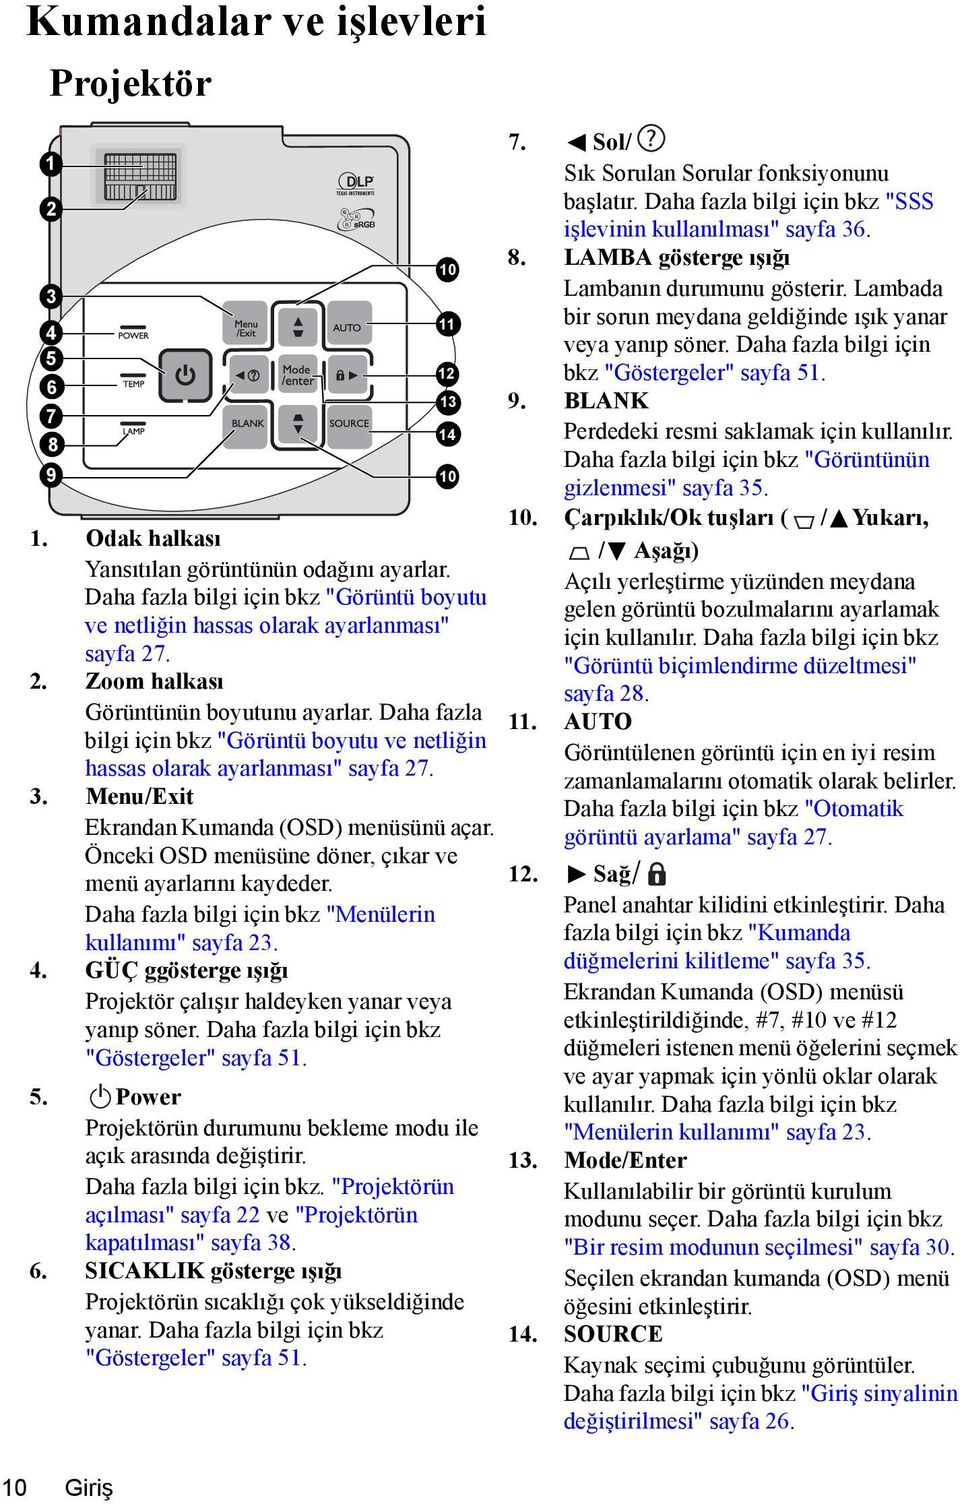 Daha fazla bilgi için bkz "Görüntü boyutu ve netliğin hassas olarak ayarlanması" sayfa 27. 3. Menu/Exit Ekrandan Kumanda (OSD) menüsünü açar.